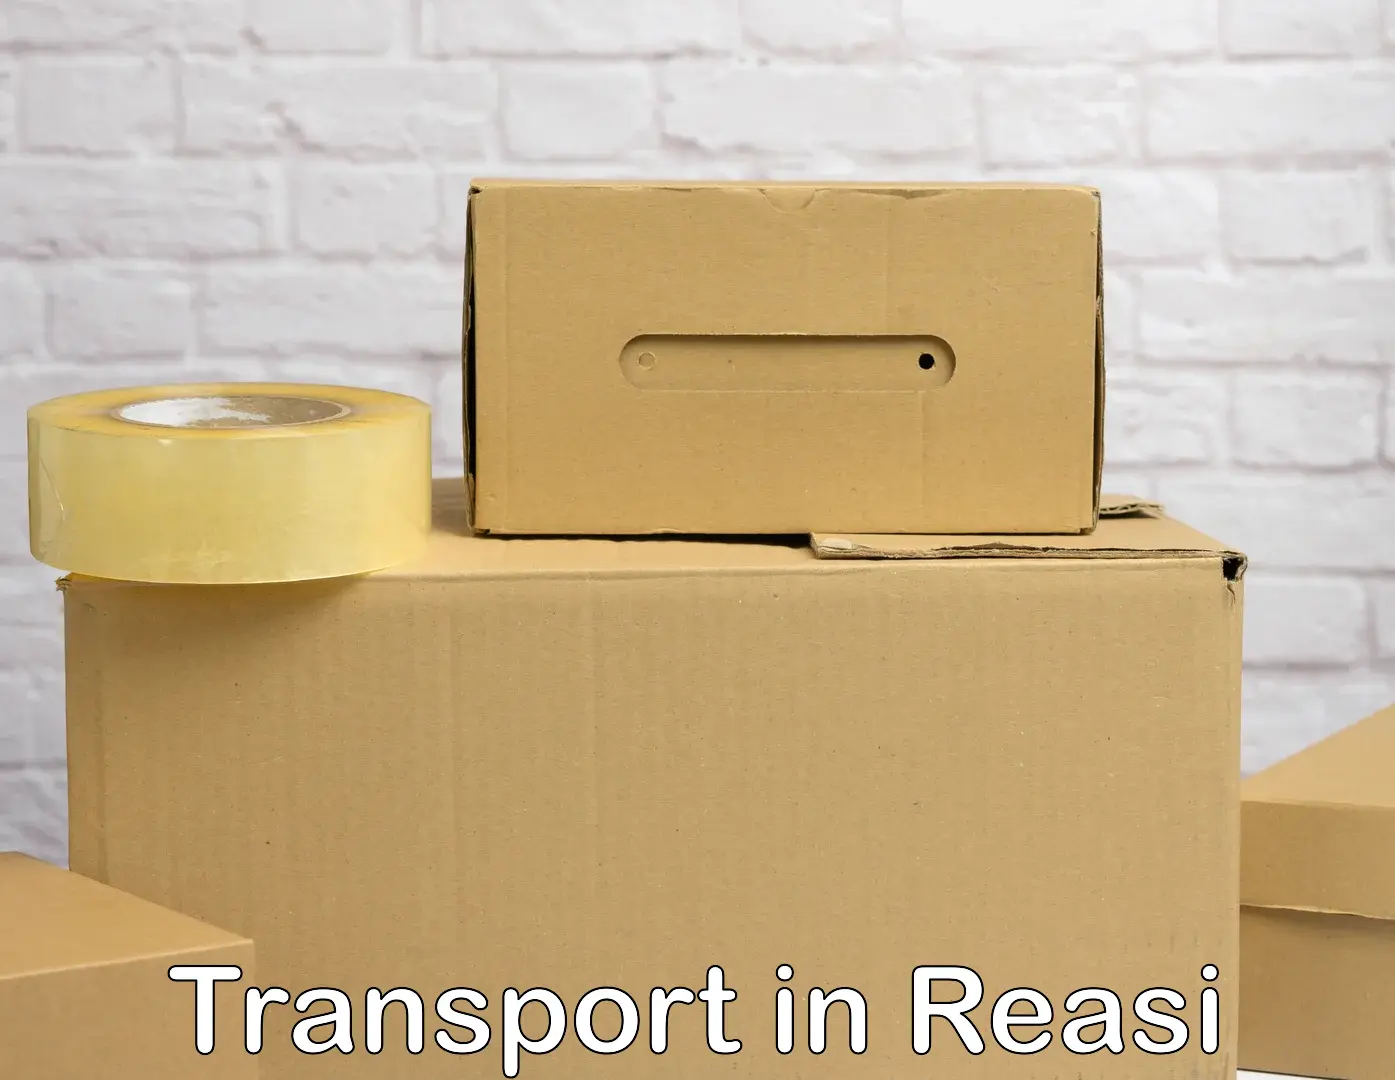 Furniture transport service in Reasi